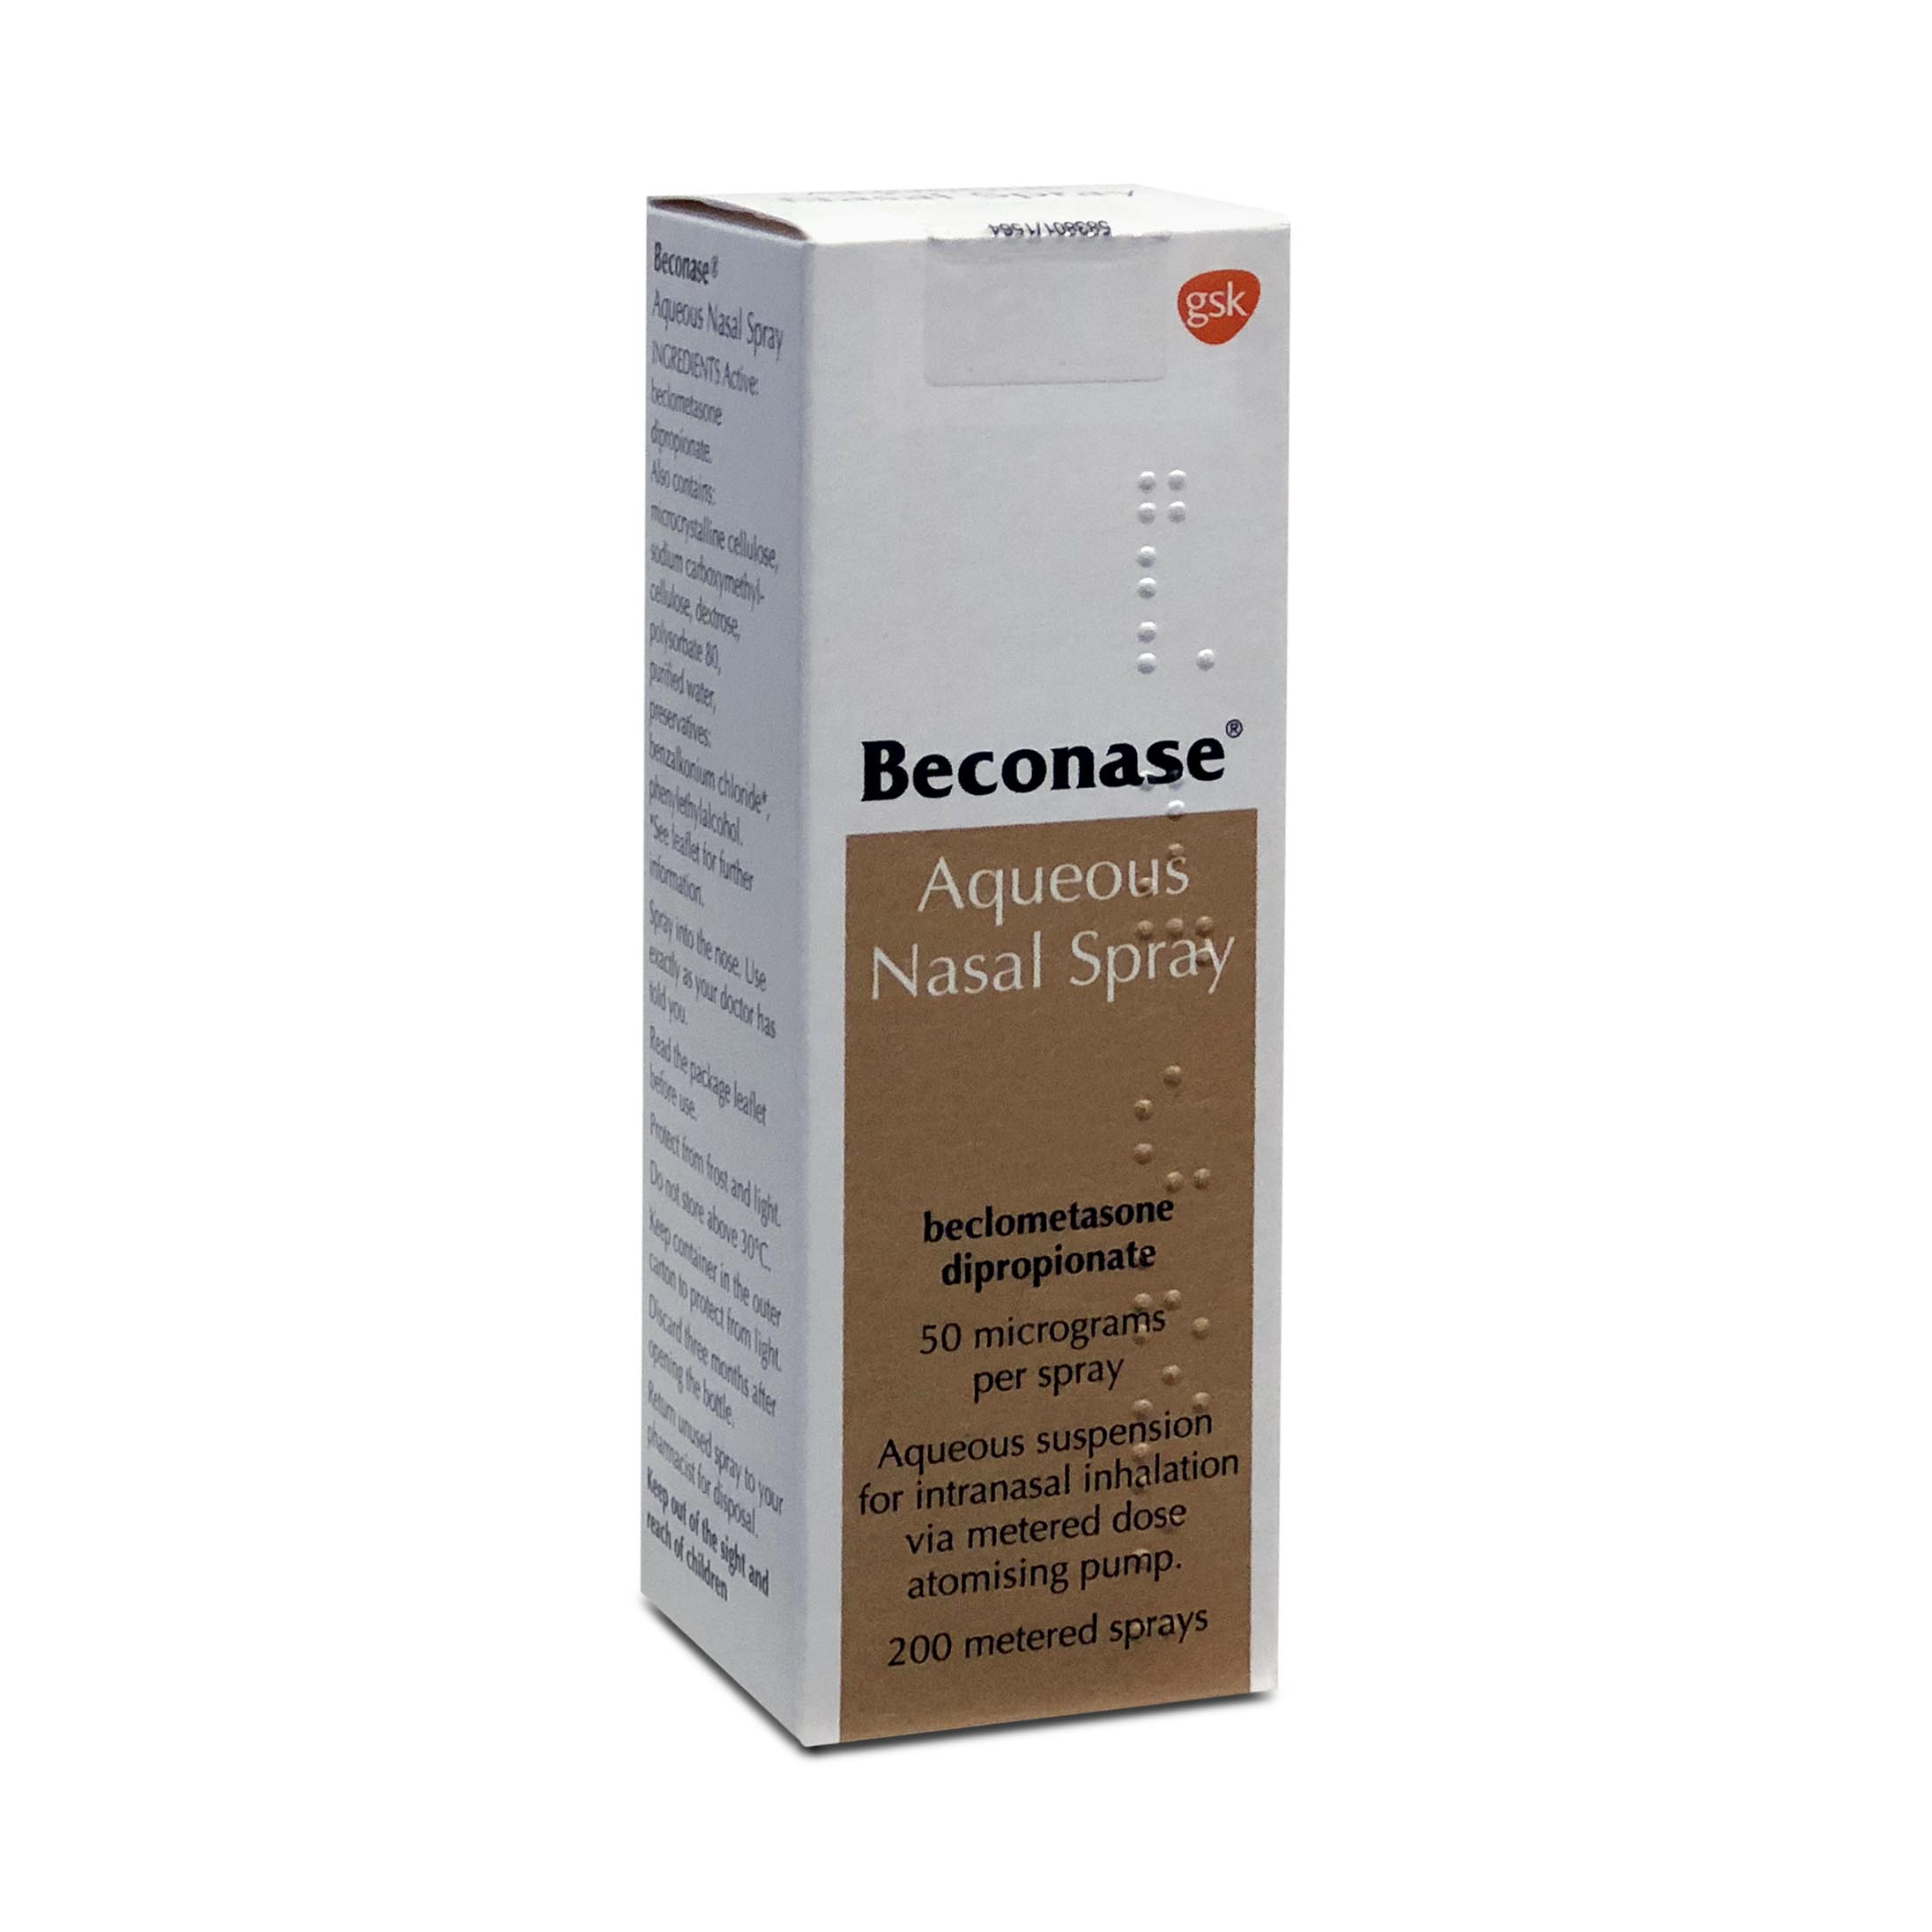 Beconase Nasal Spray manufactured by GlaxoSmithKline (GSK)